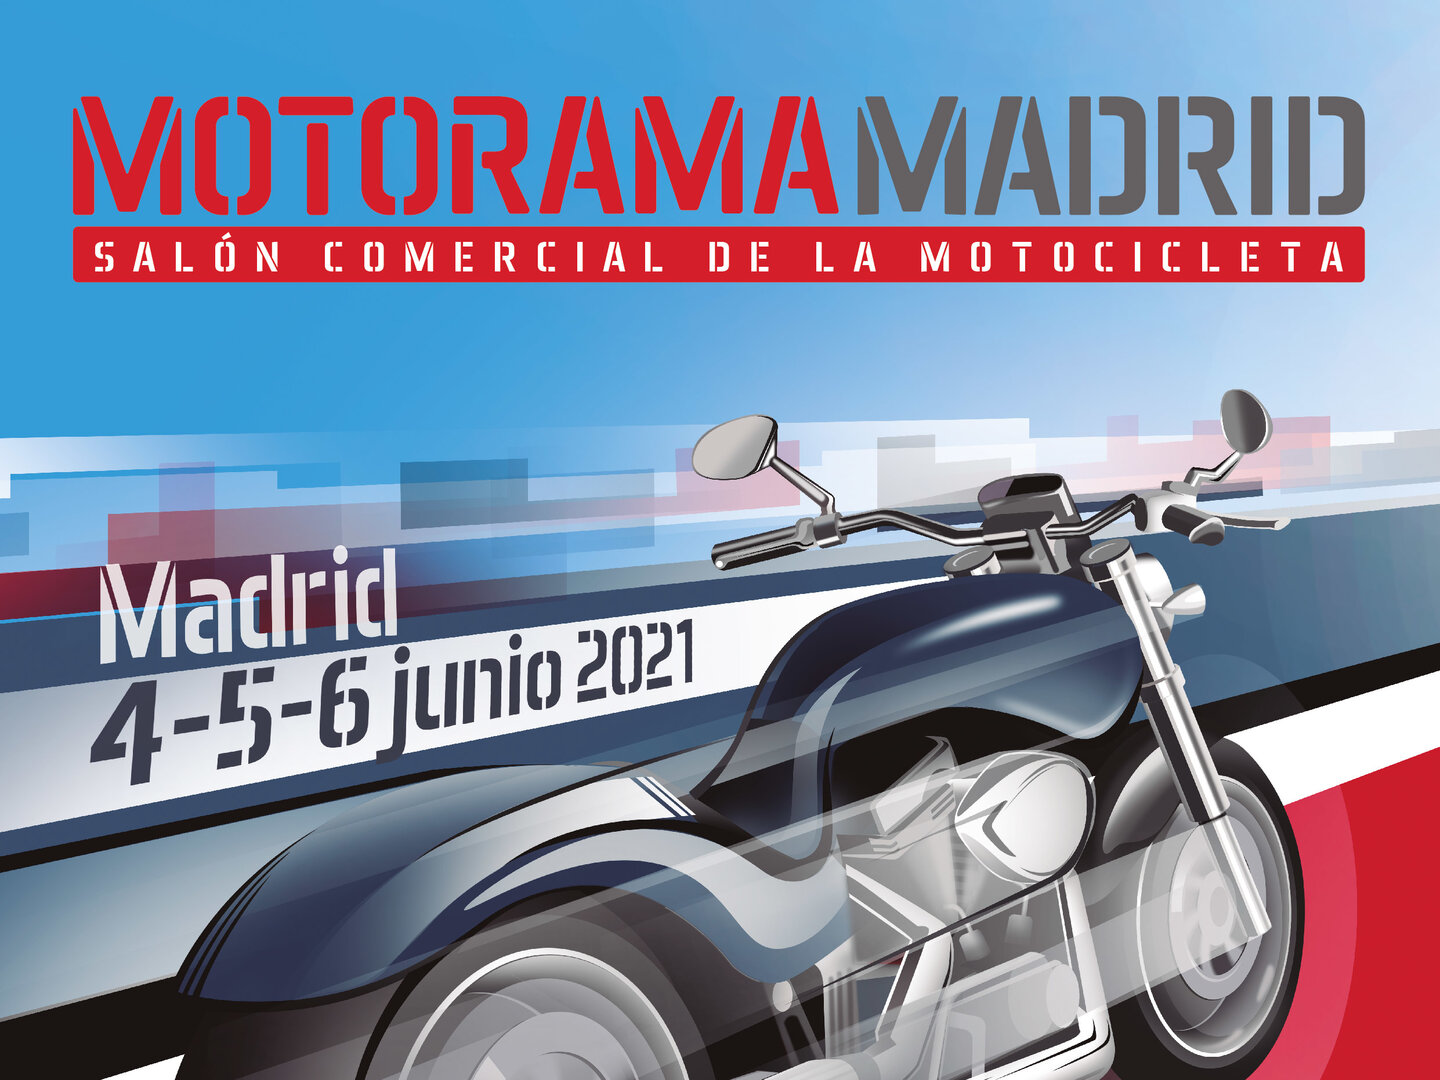 Se confirma la celebración del Motorama Madrid 2021